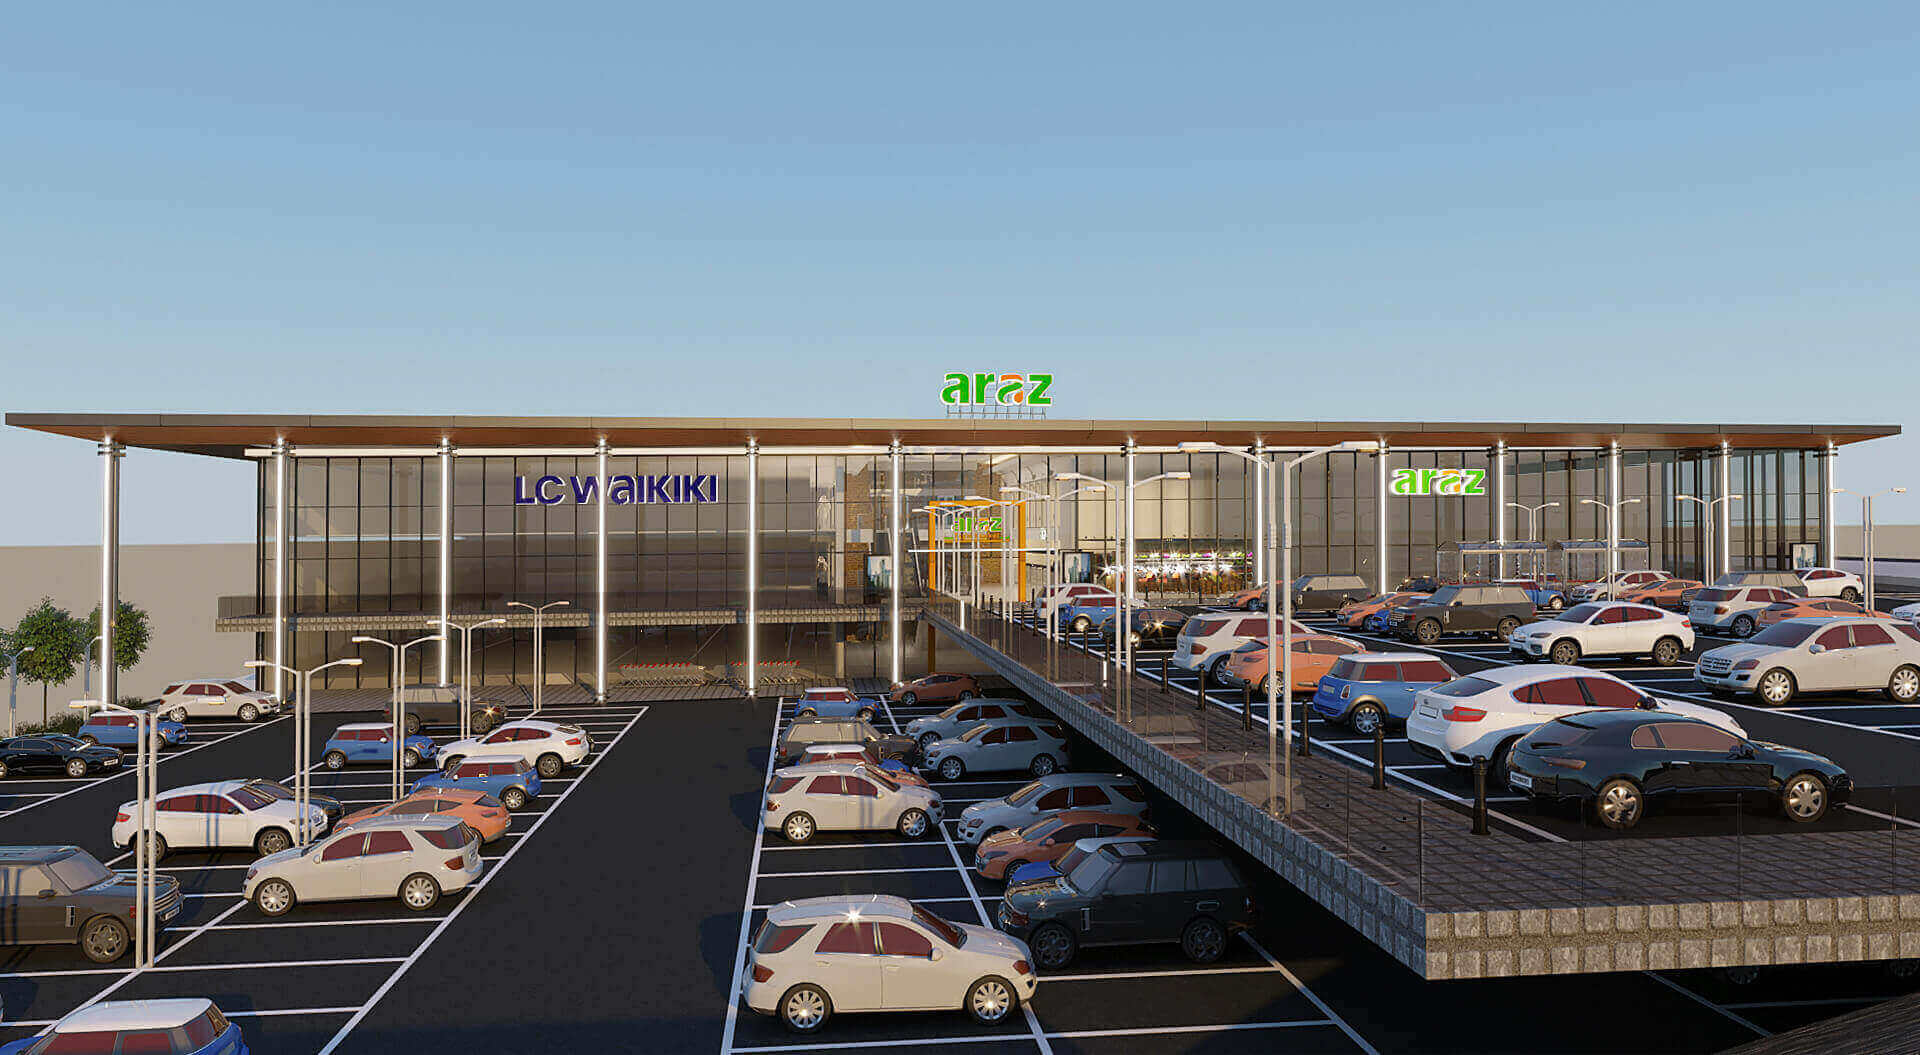 Araz Shopping Centre Azerbaijan, Designing a Local Mall, External Parking - CampbellRigg Agency